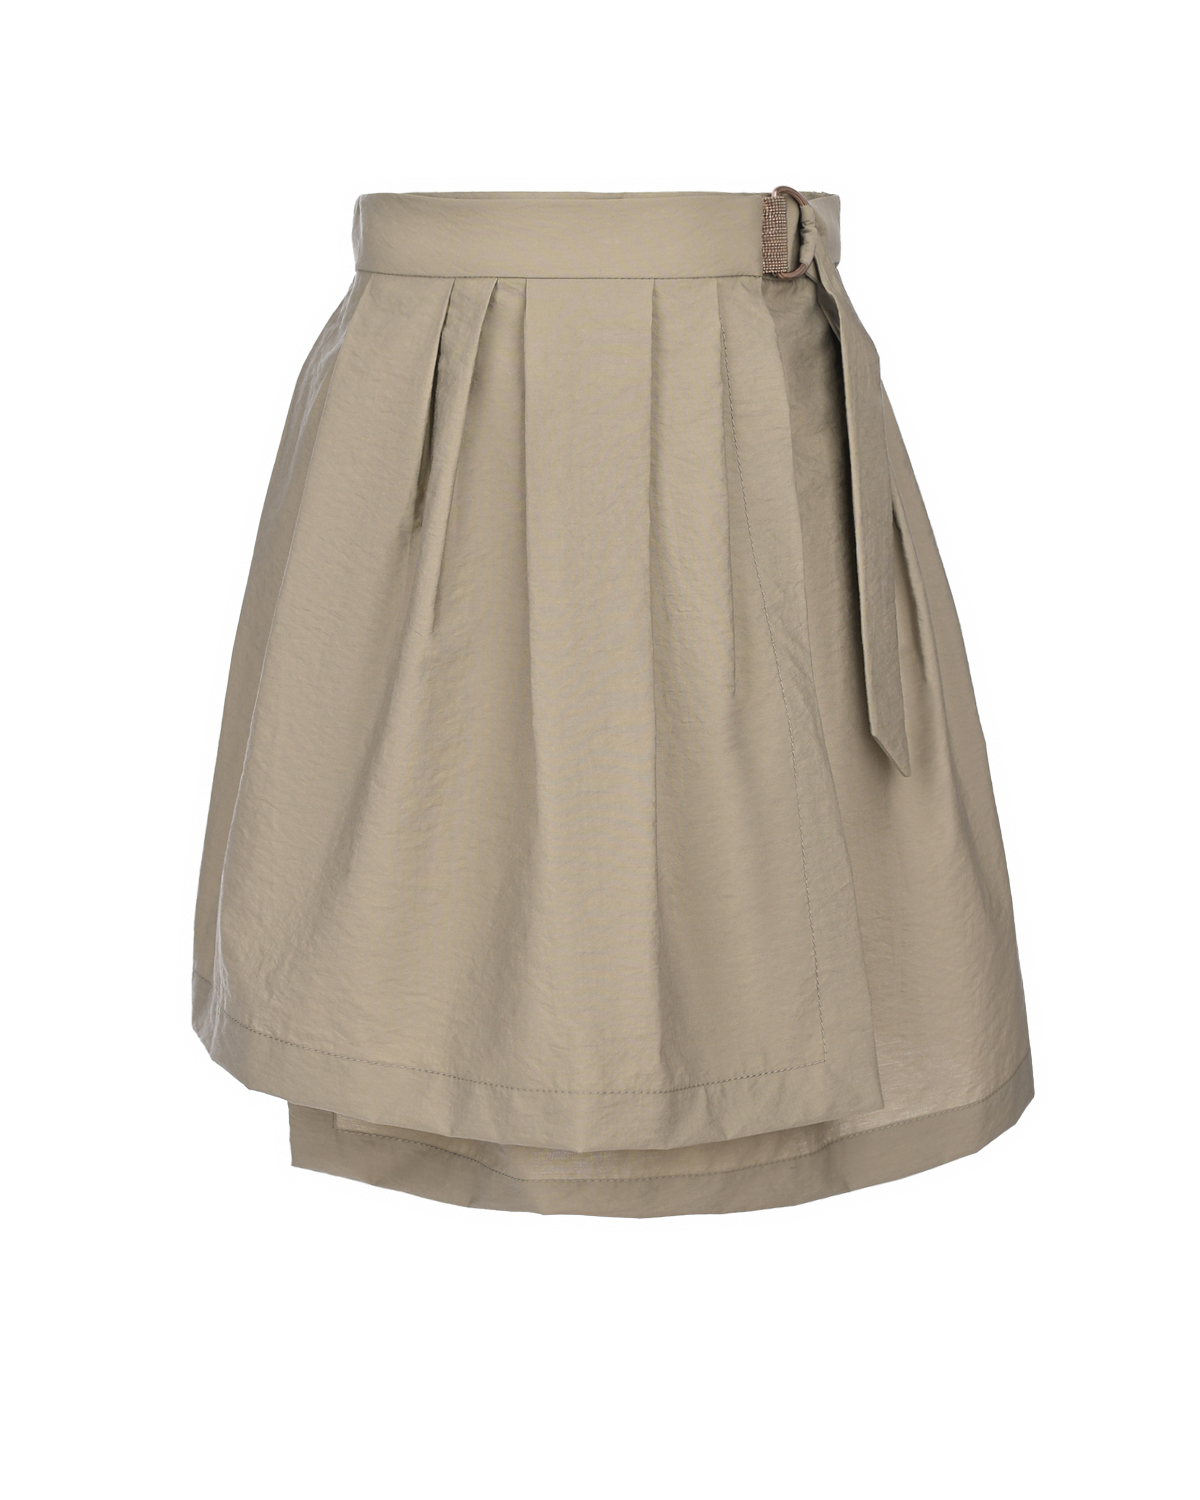 Светло-зеленая юбка Brunello Cucinelli юбка женская мини из экокожи в светло коричневом оттенке